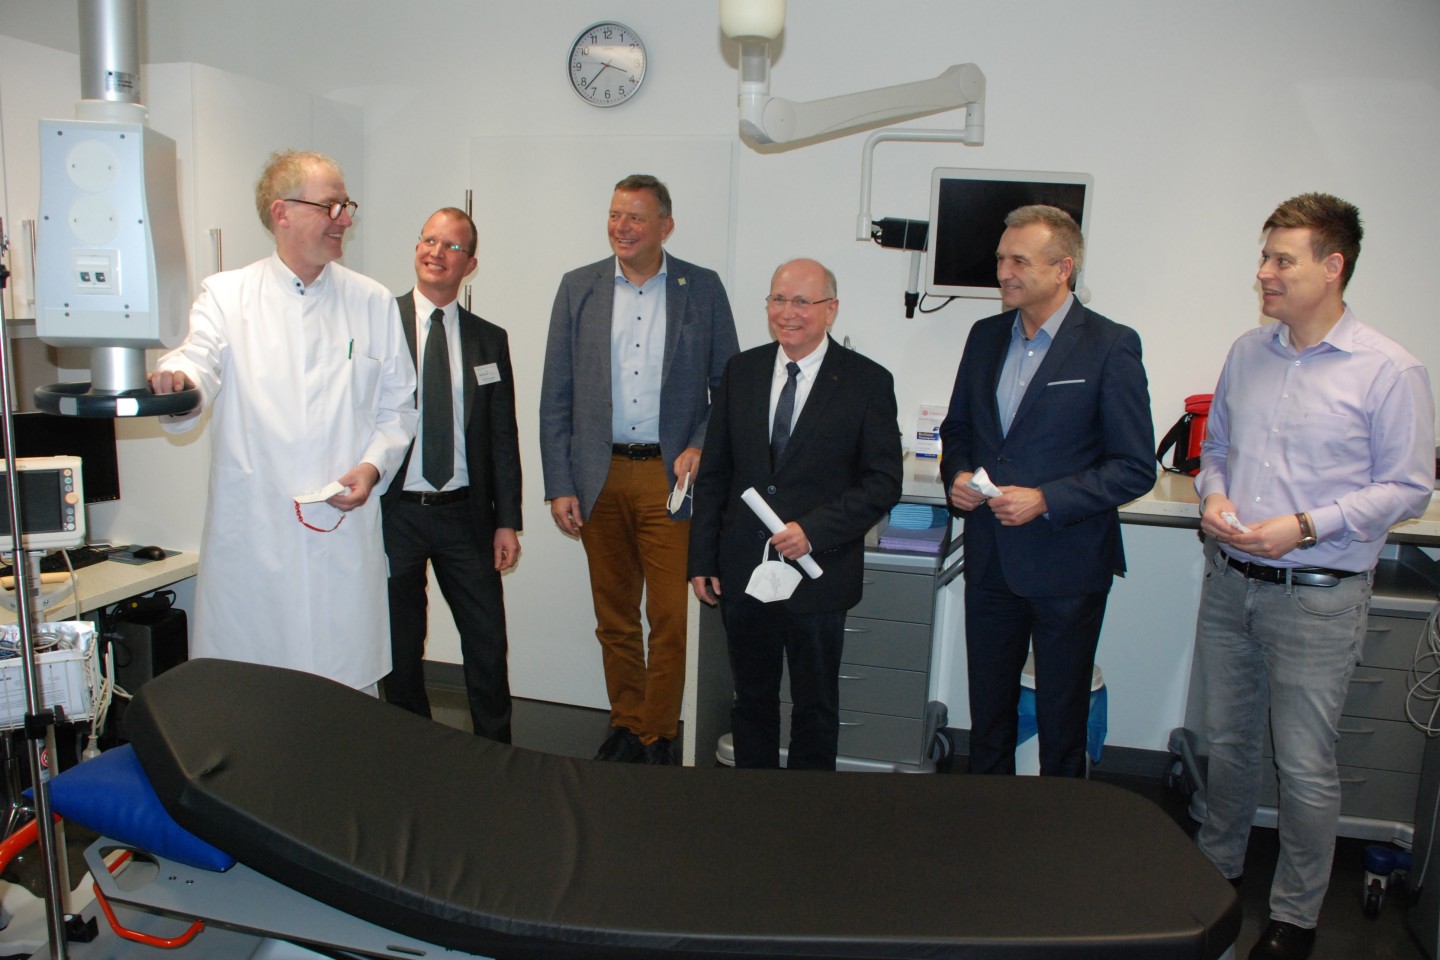 BILDZEILE: Zum Besuch in der Klinik Rosenberg gehörte auch ein Blick in den Bereich der hochmodernen Diagnostik, die der Ärztliche Direktor Dr. Harald Fischer (links) vorstellte. Mit auf dem Bild sind